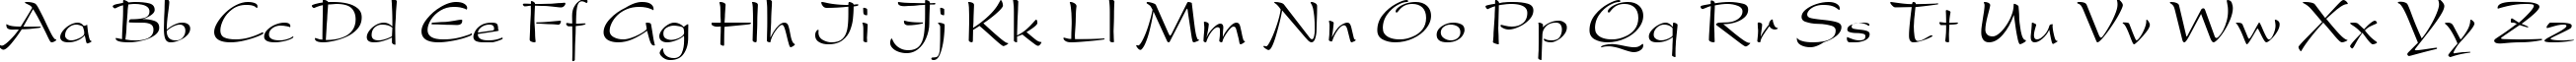 Пример написания английского алфавита шрифтом Sakura